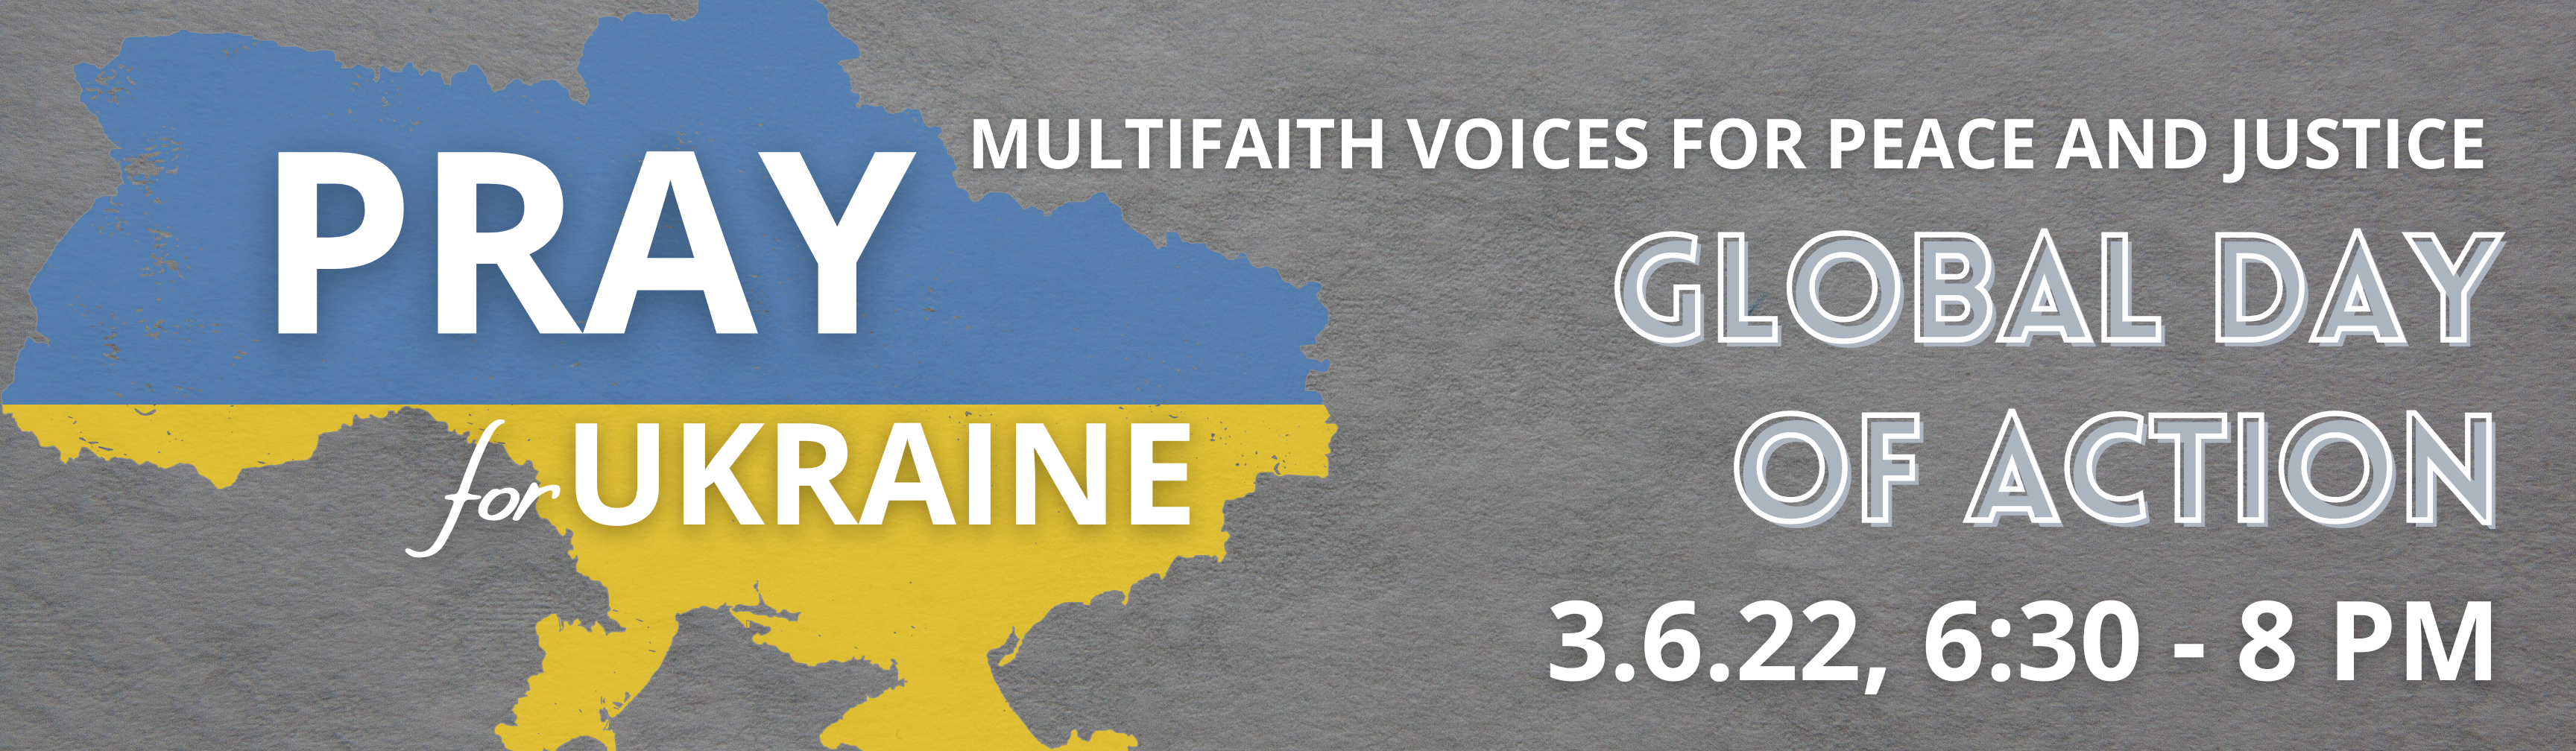 Pray for Ukraine banner v2